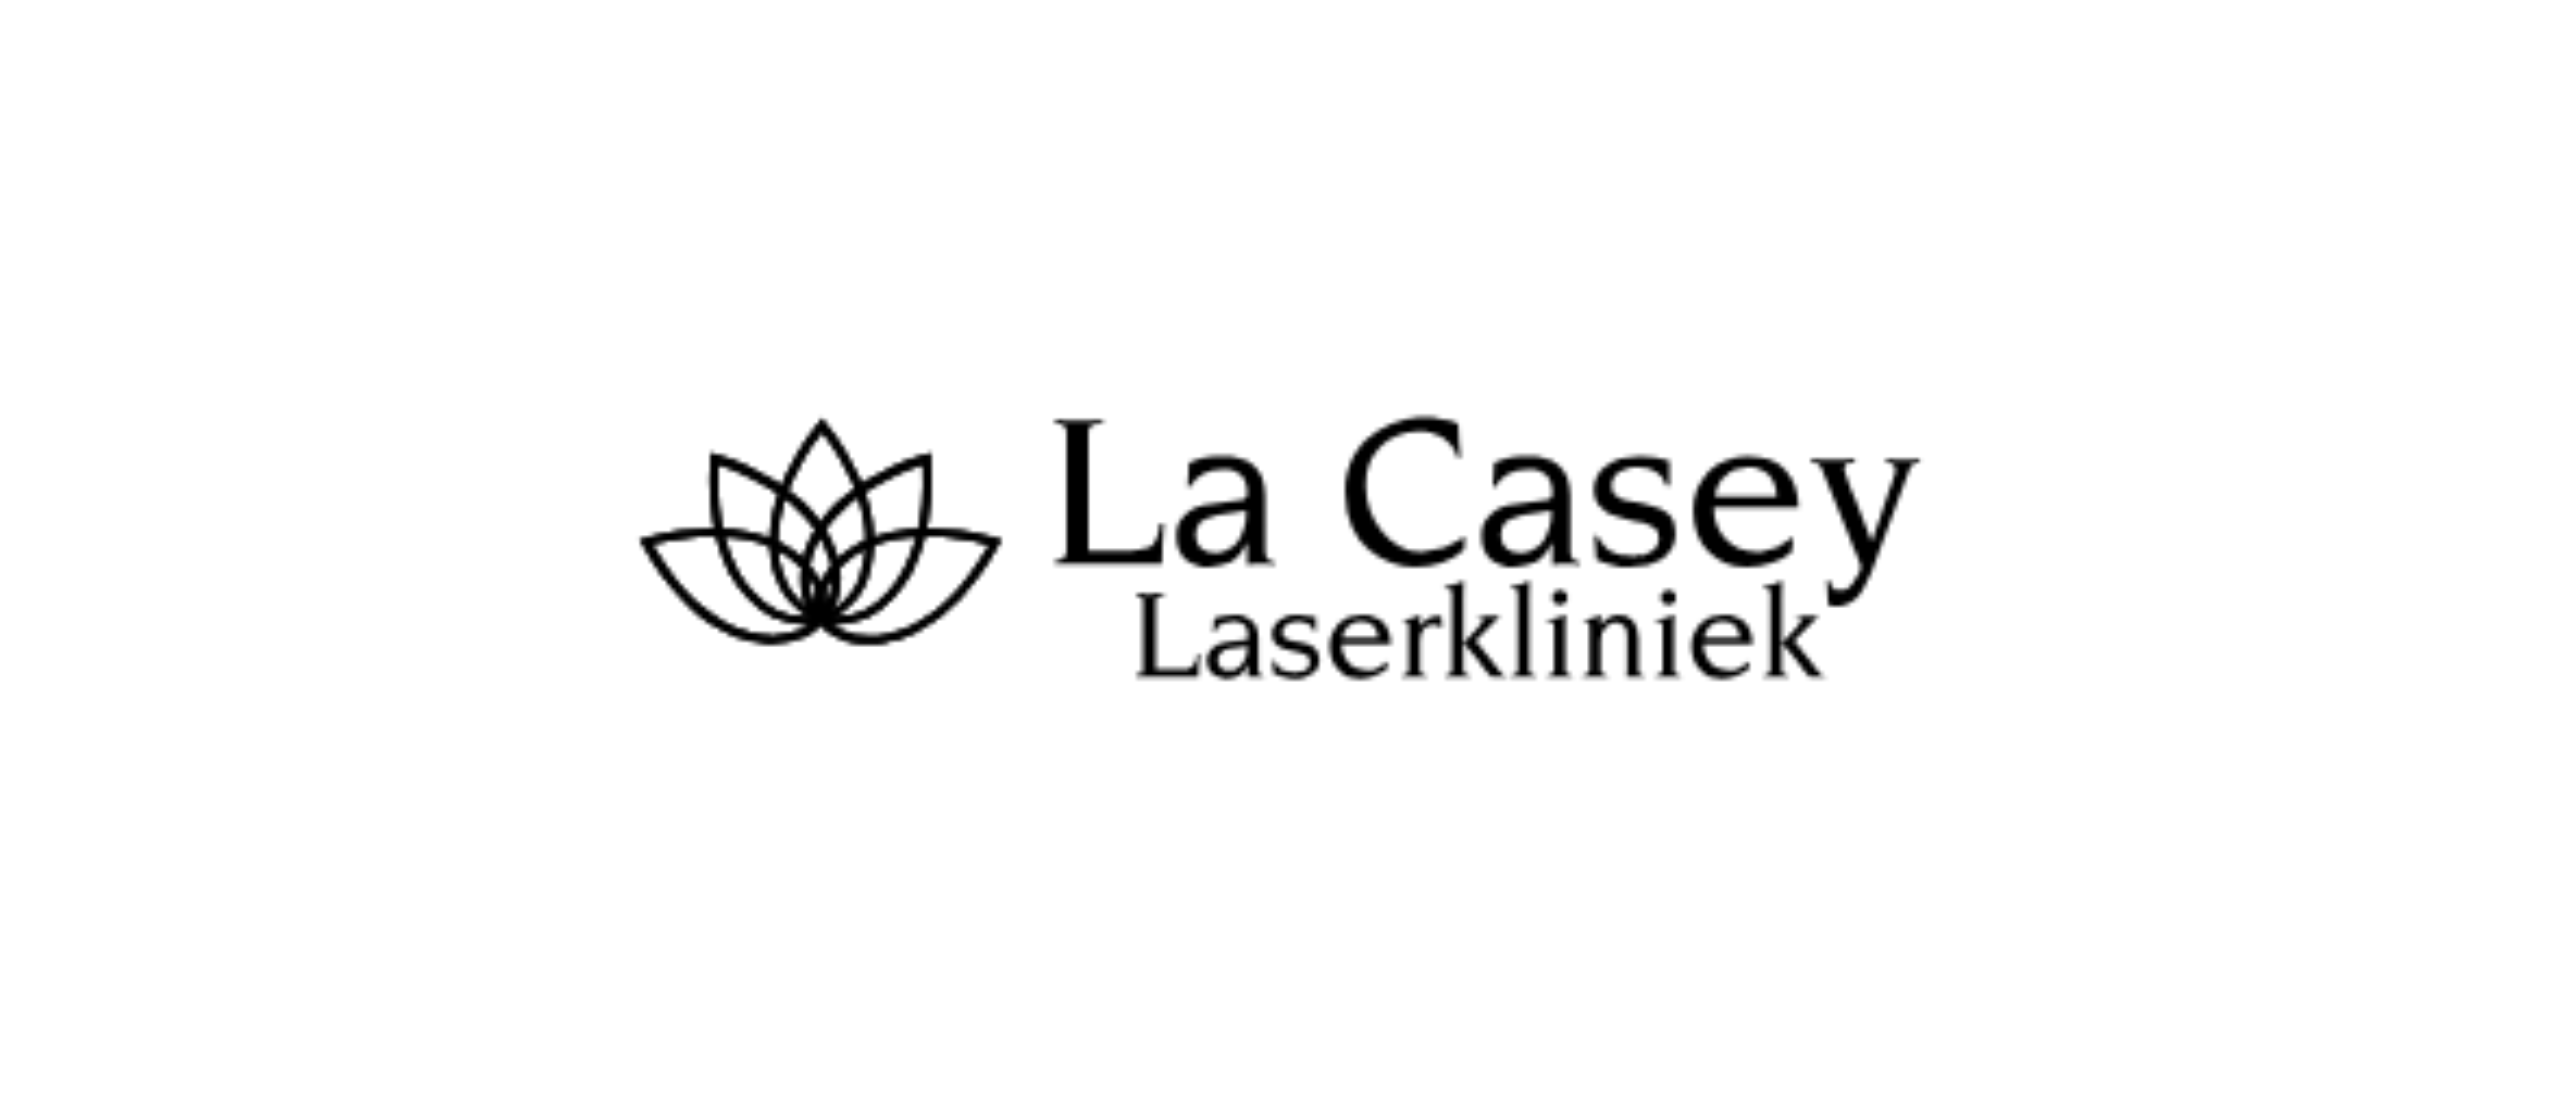 La Casey Laserkliniek: Een Toonaangevende Specialist in Laserontharing en Cryolipolyse in Den Haag